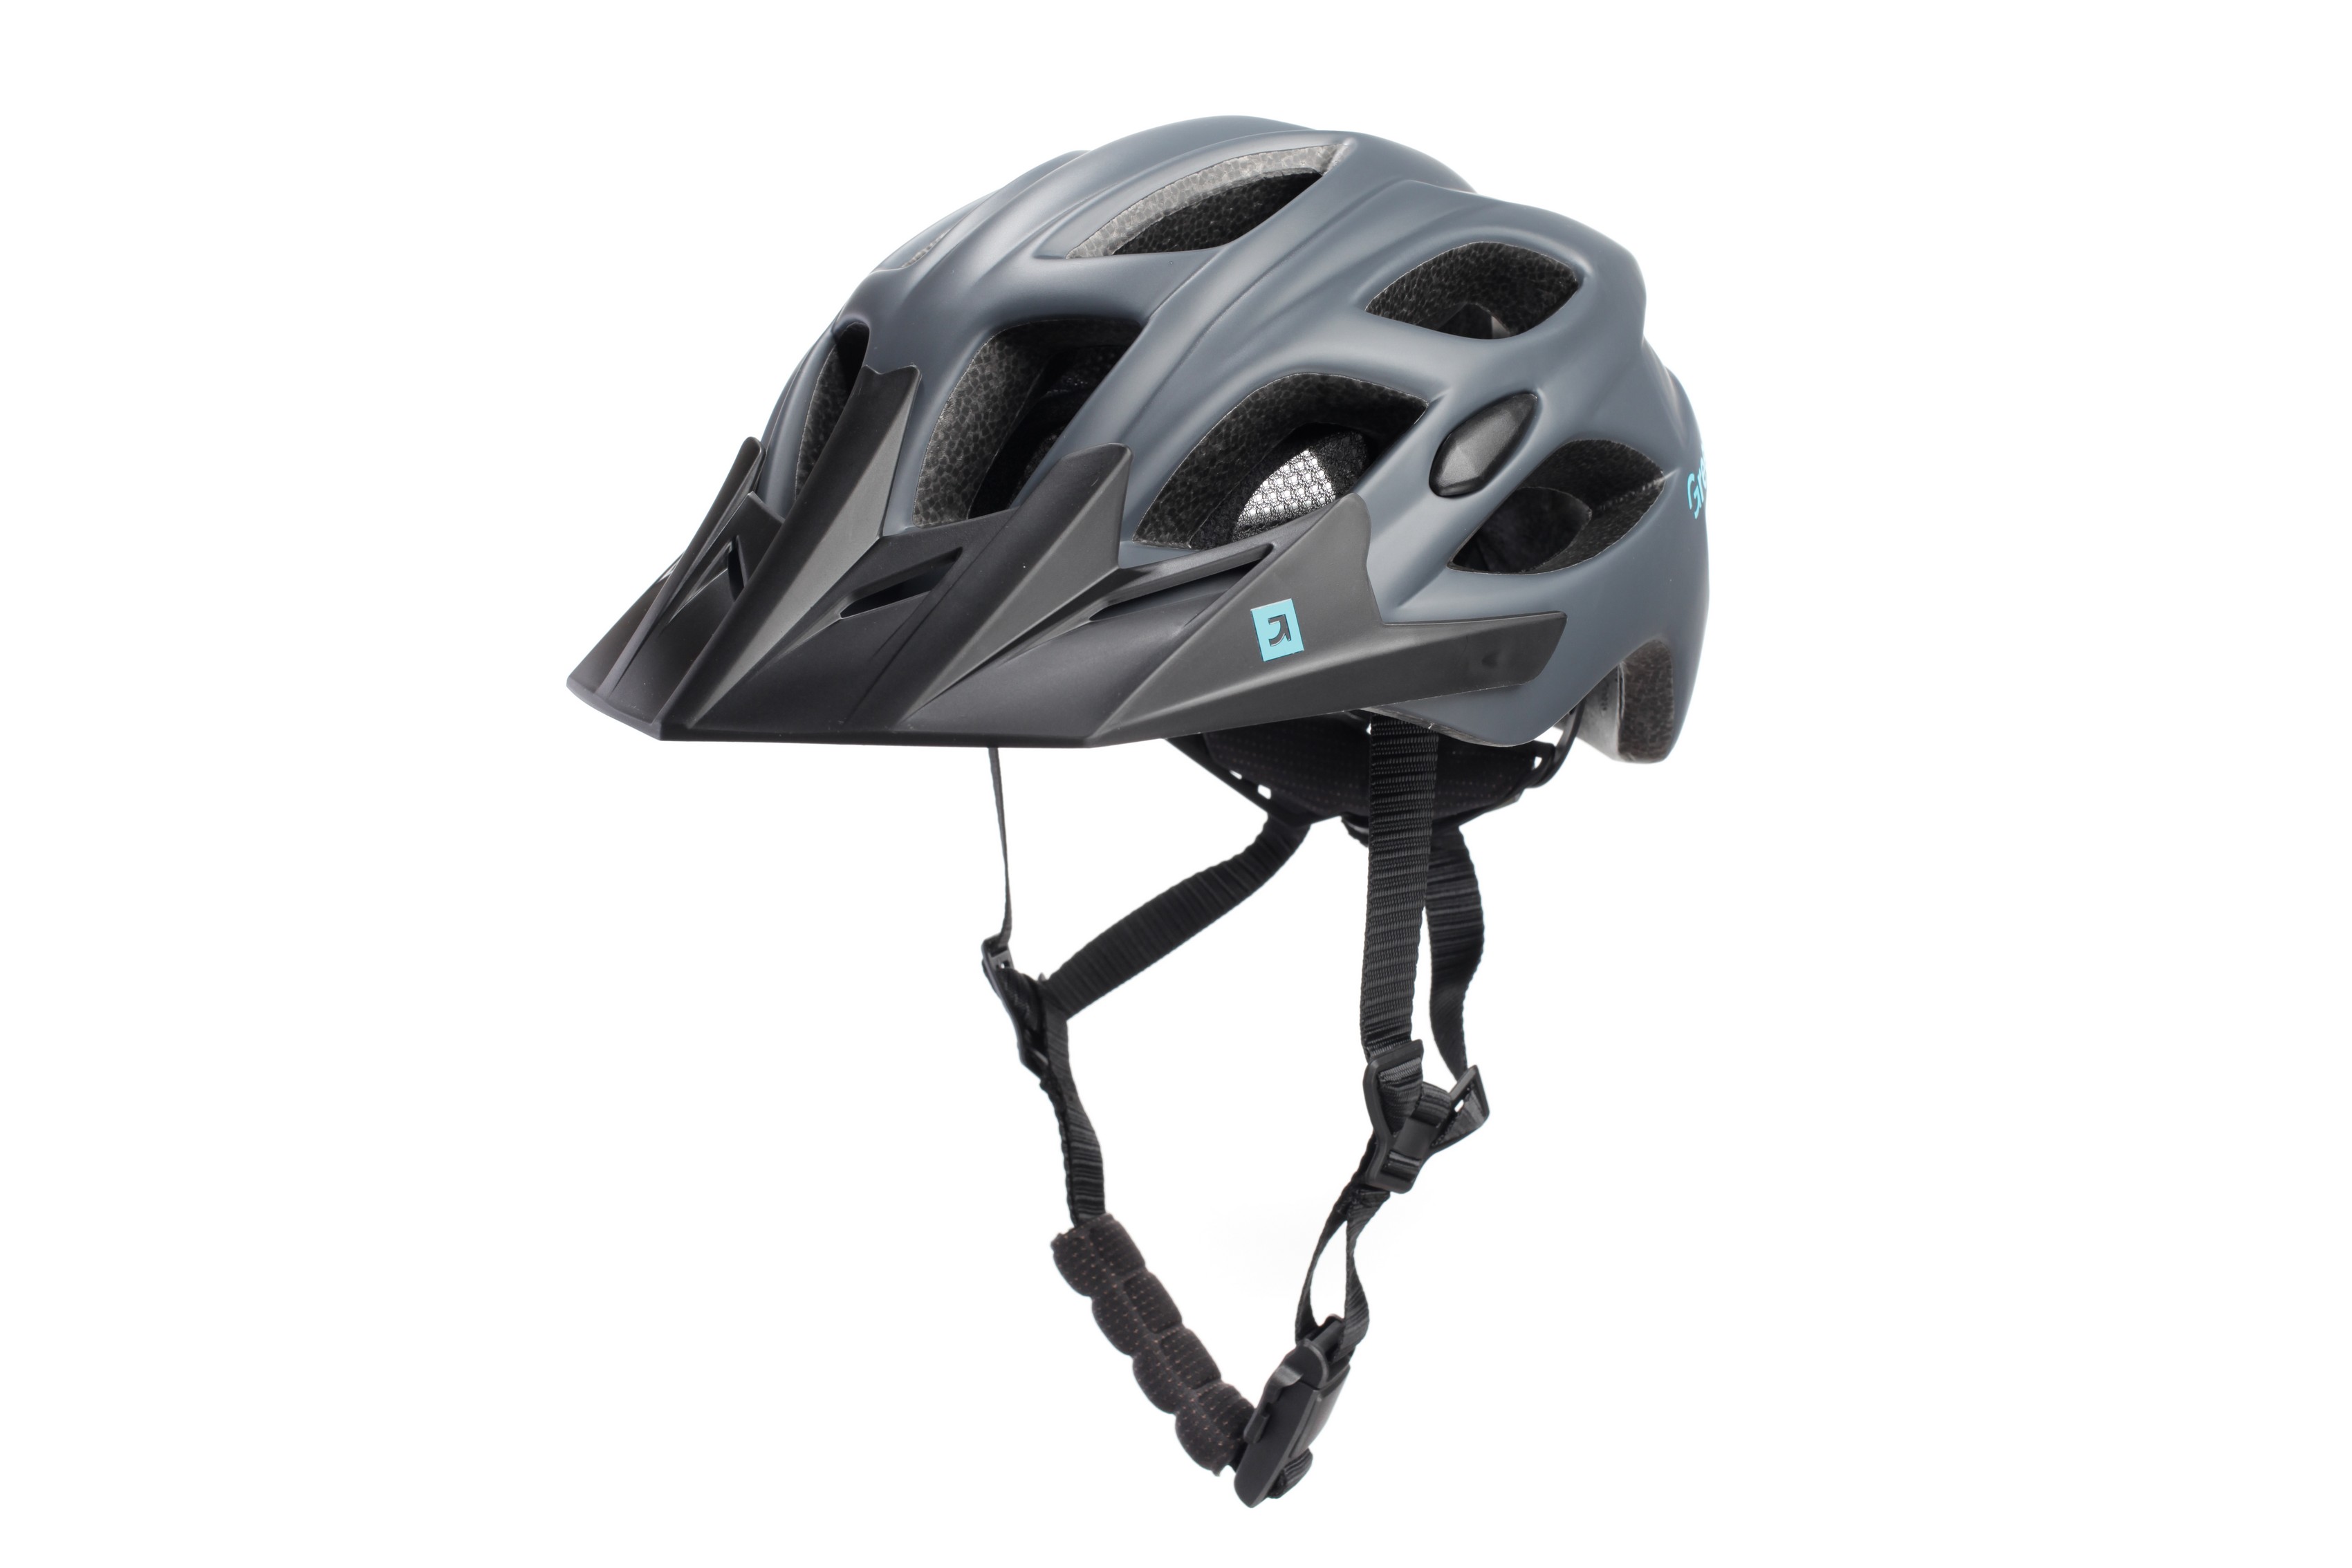 Шлем Green Cycle Rebel размер 54-58см темно-серый мат